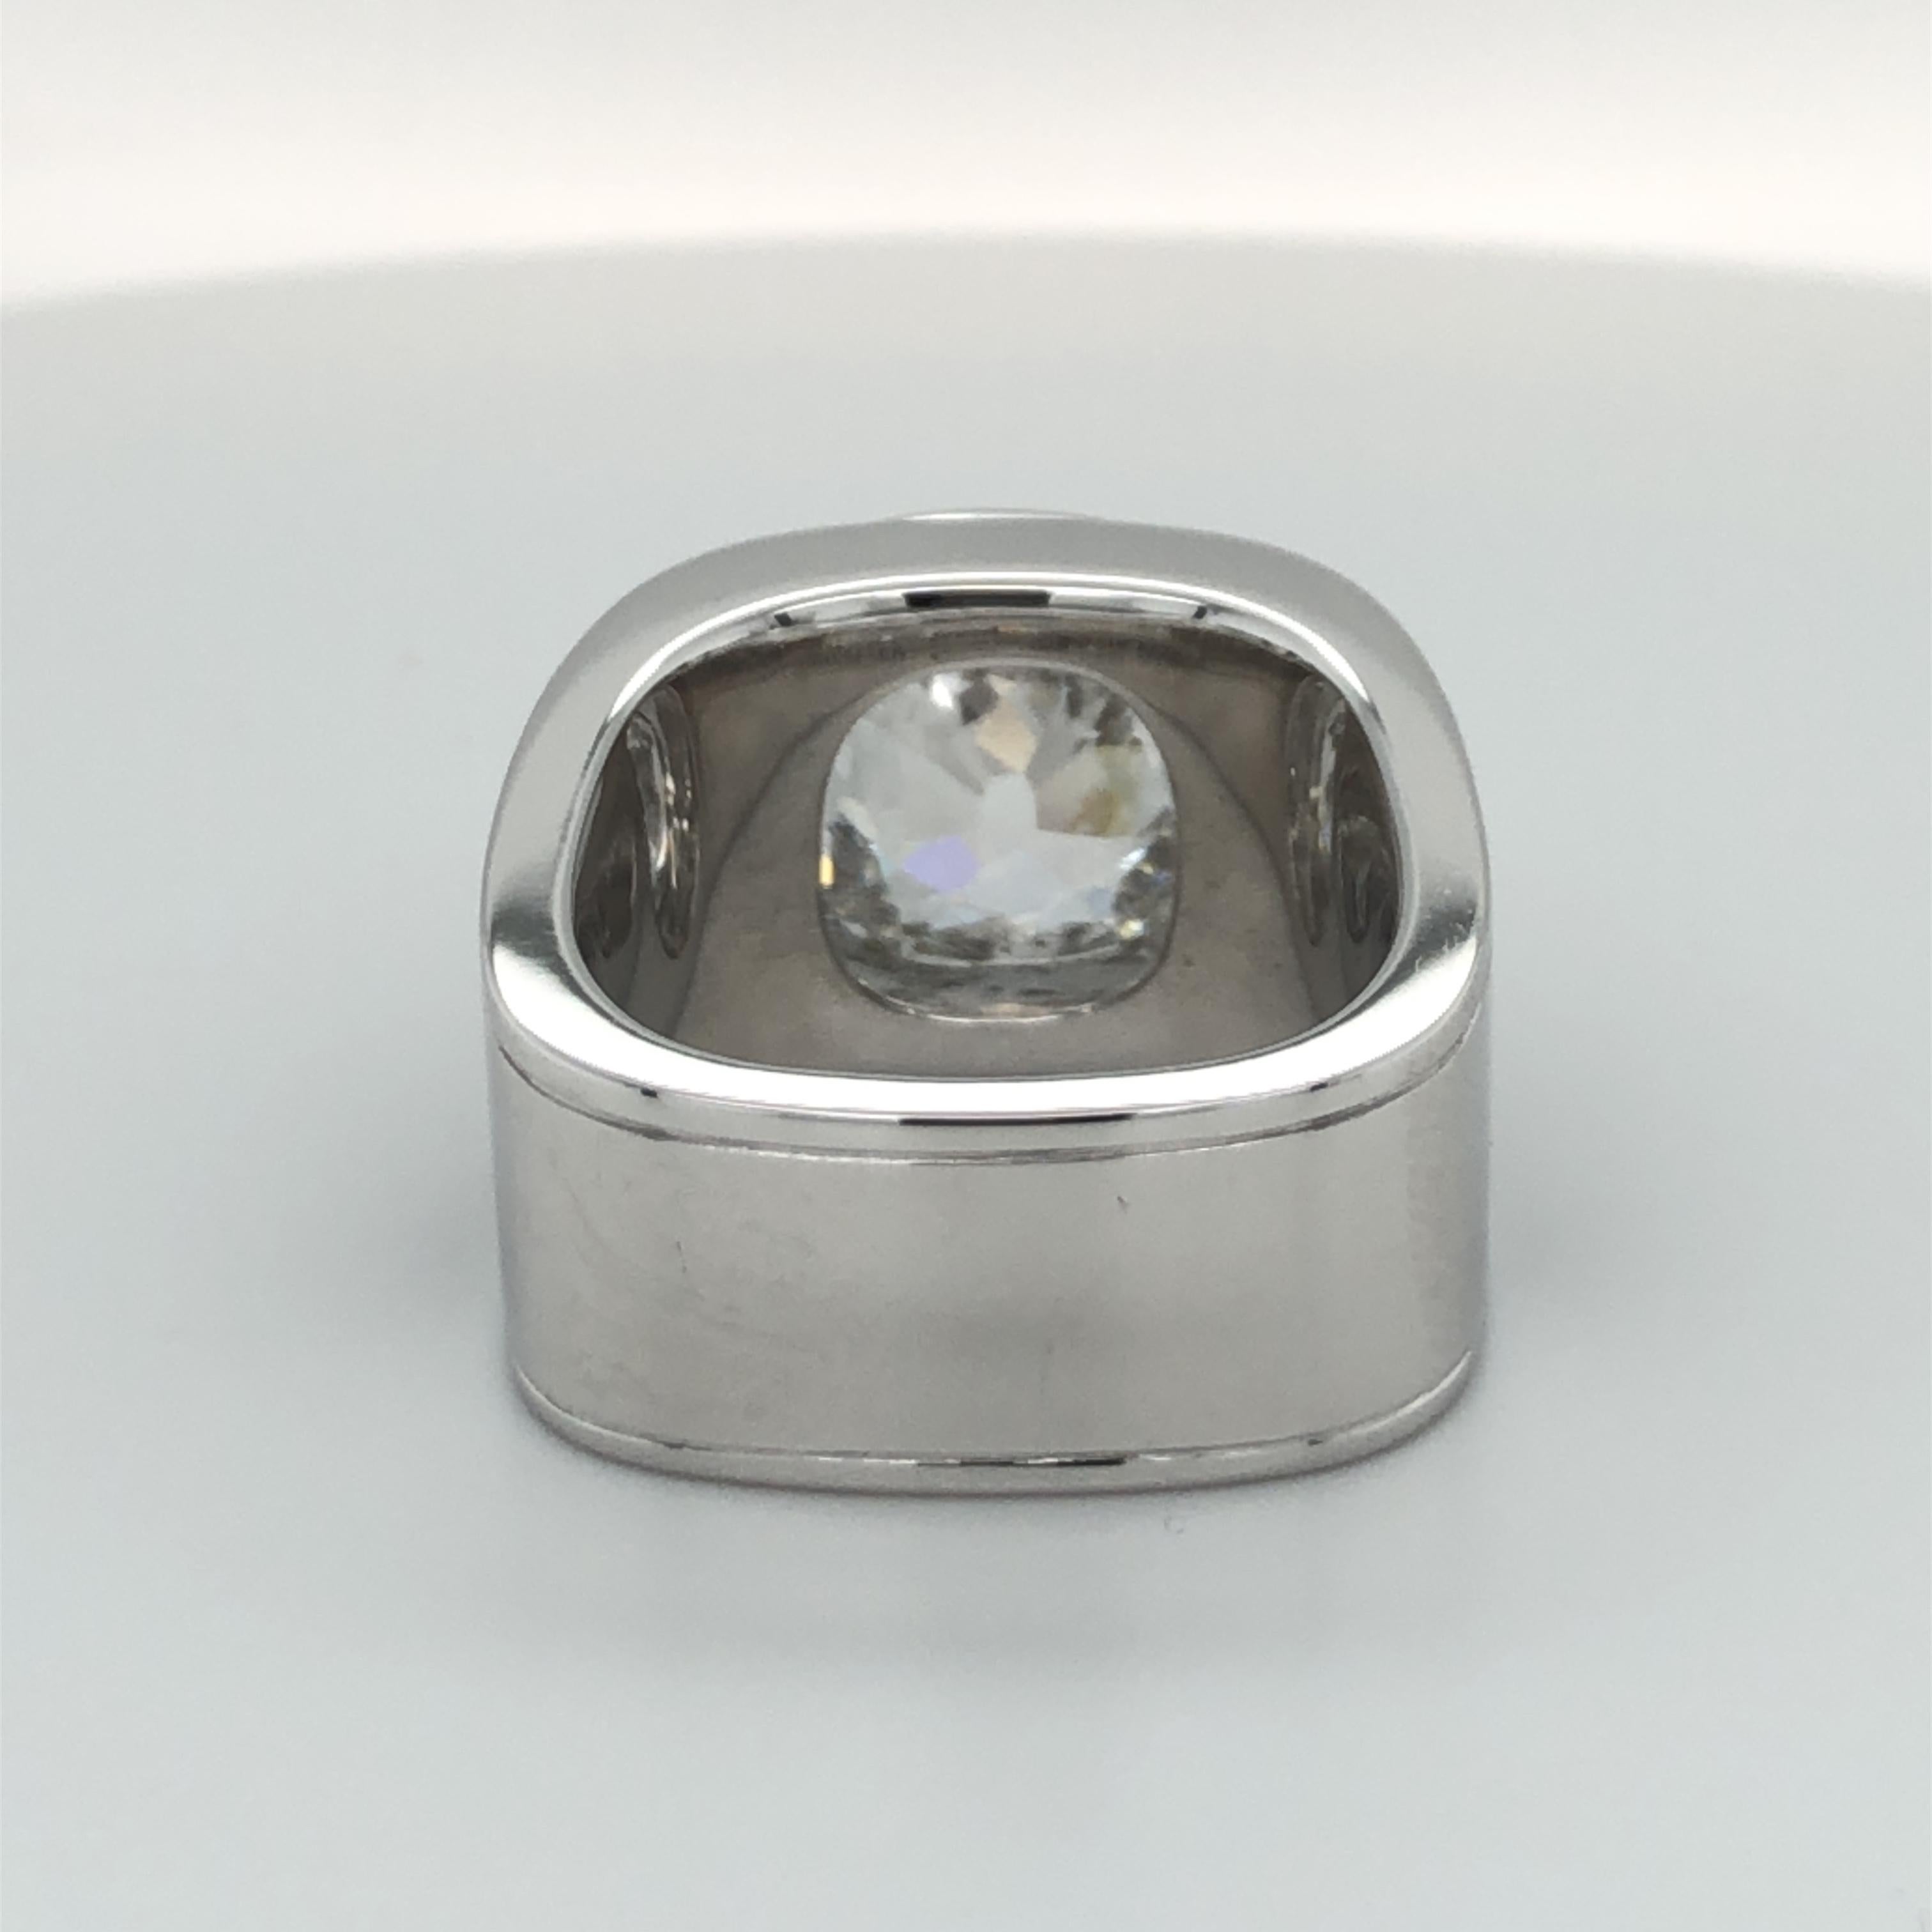 Binder Moerisch 3.41 Carat Diamond Ring in 18 Karat White Gold and Carbon In Excellent Condition In Lucerne, CH